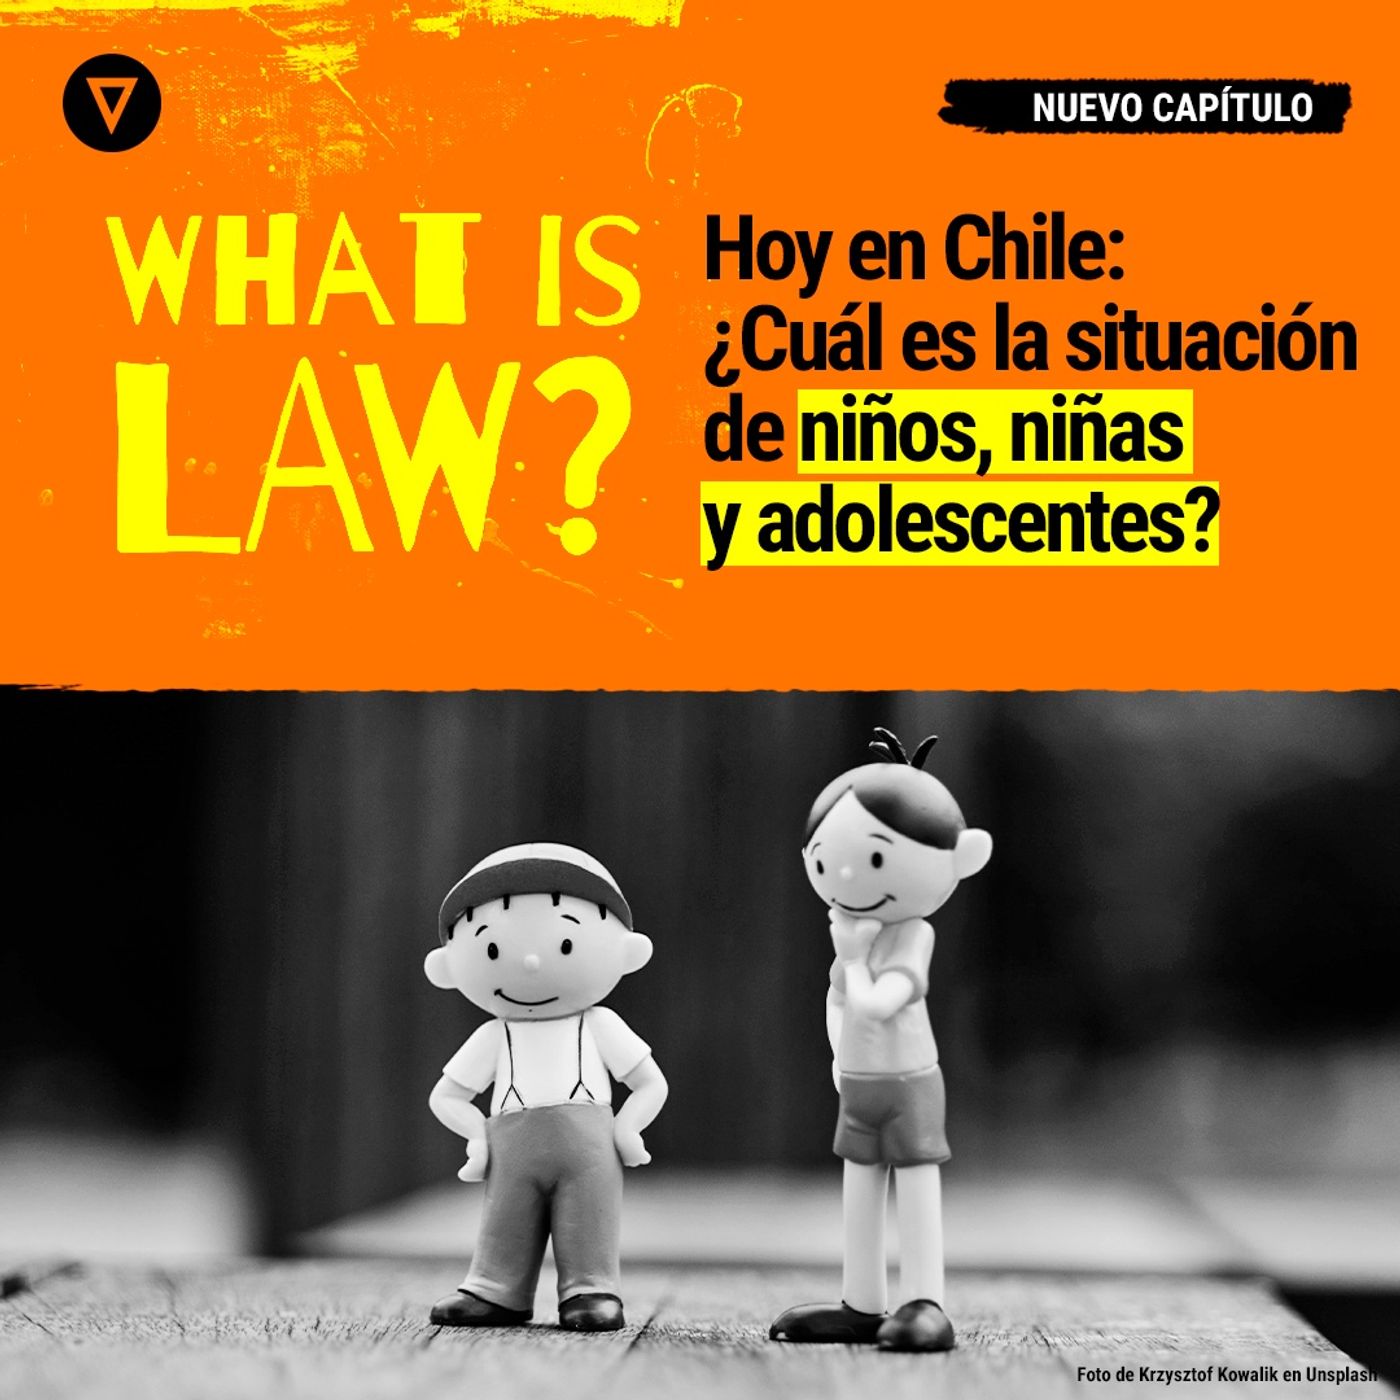 Capítulo 26 - ¿Cuál es la situación de niños, niñas y adolescentes en Chile?